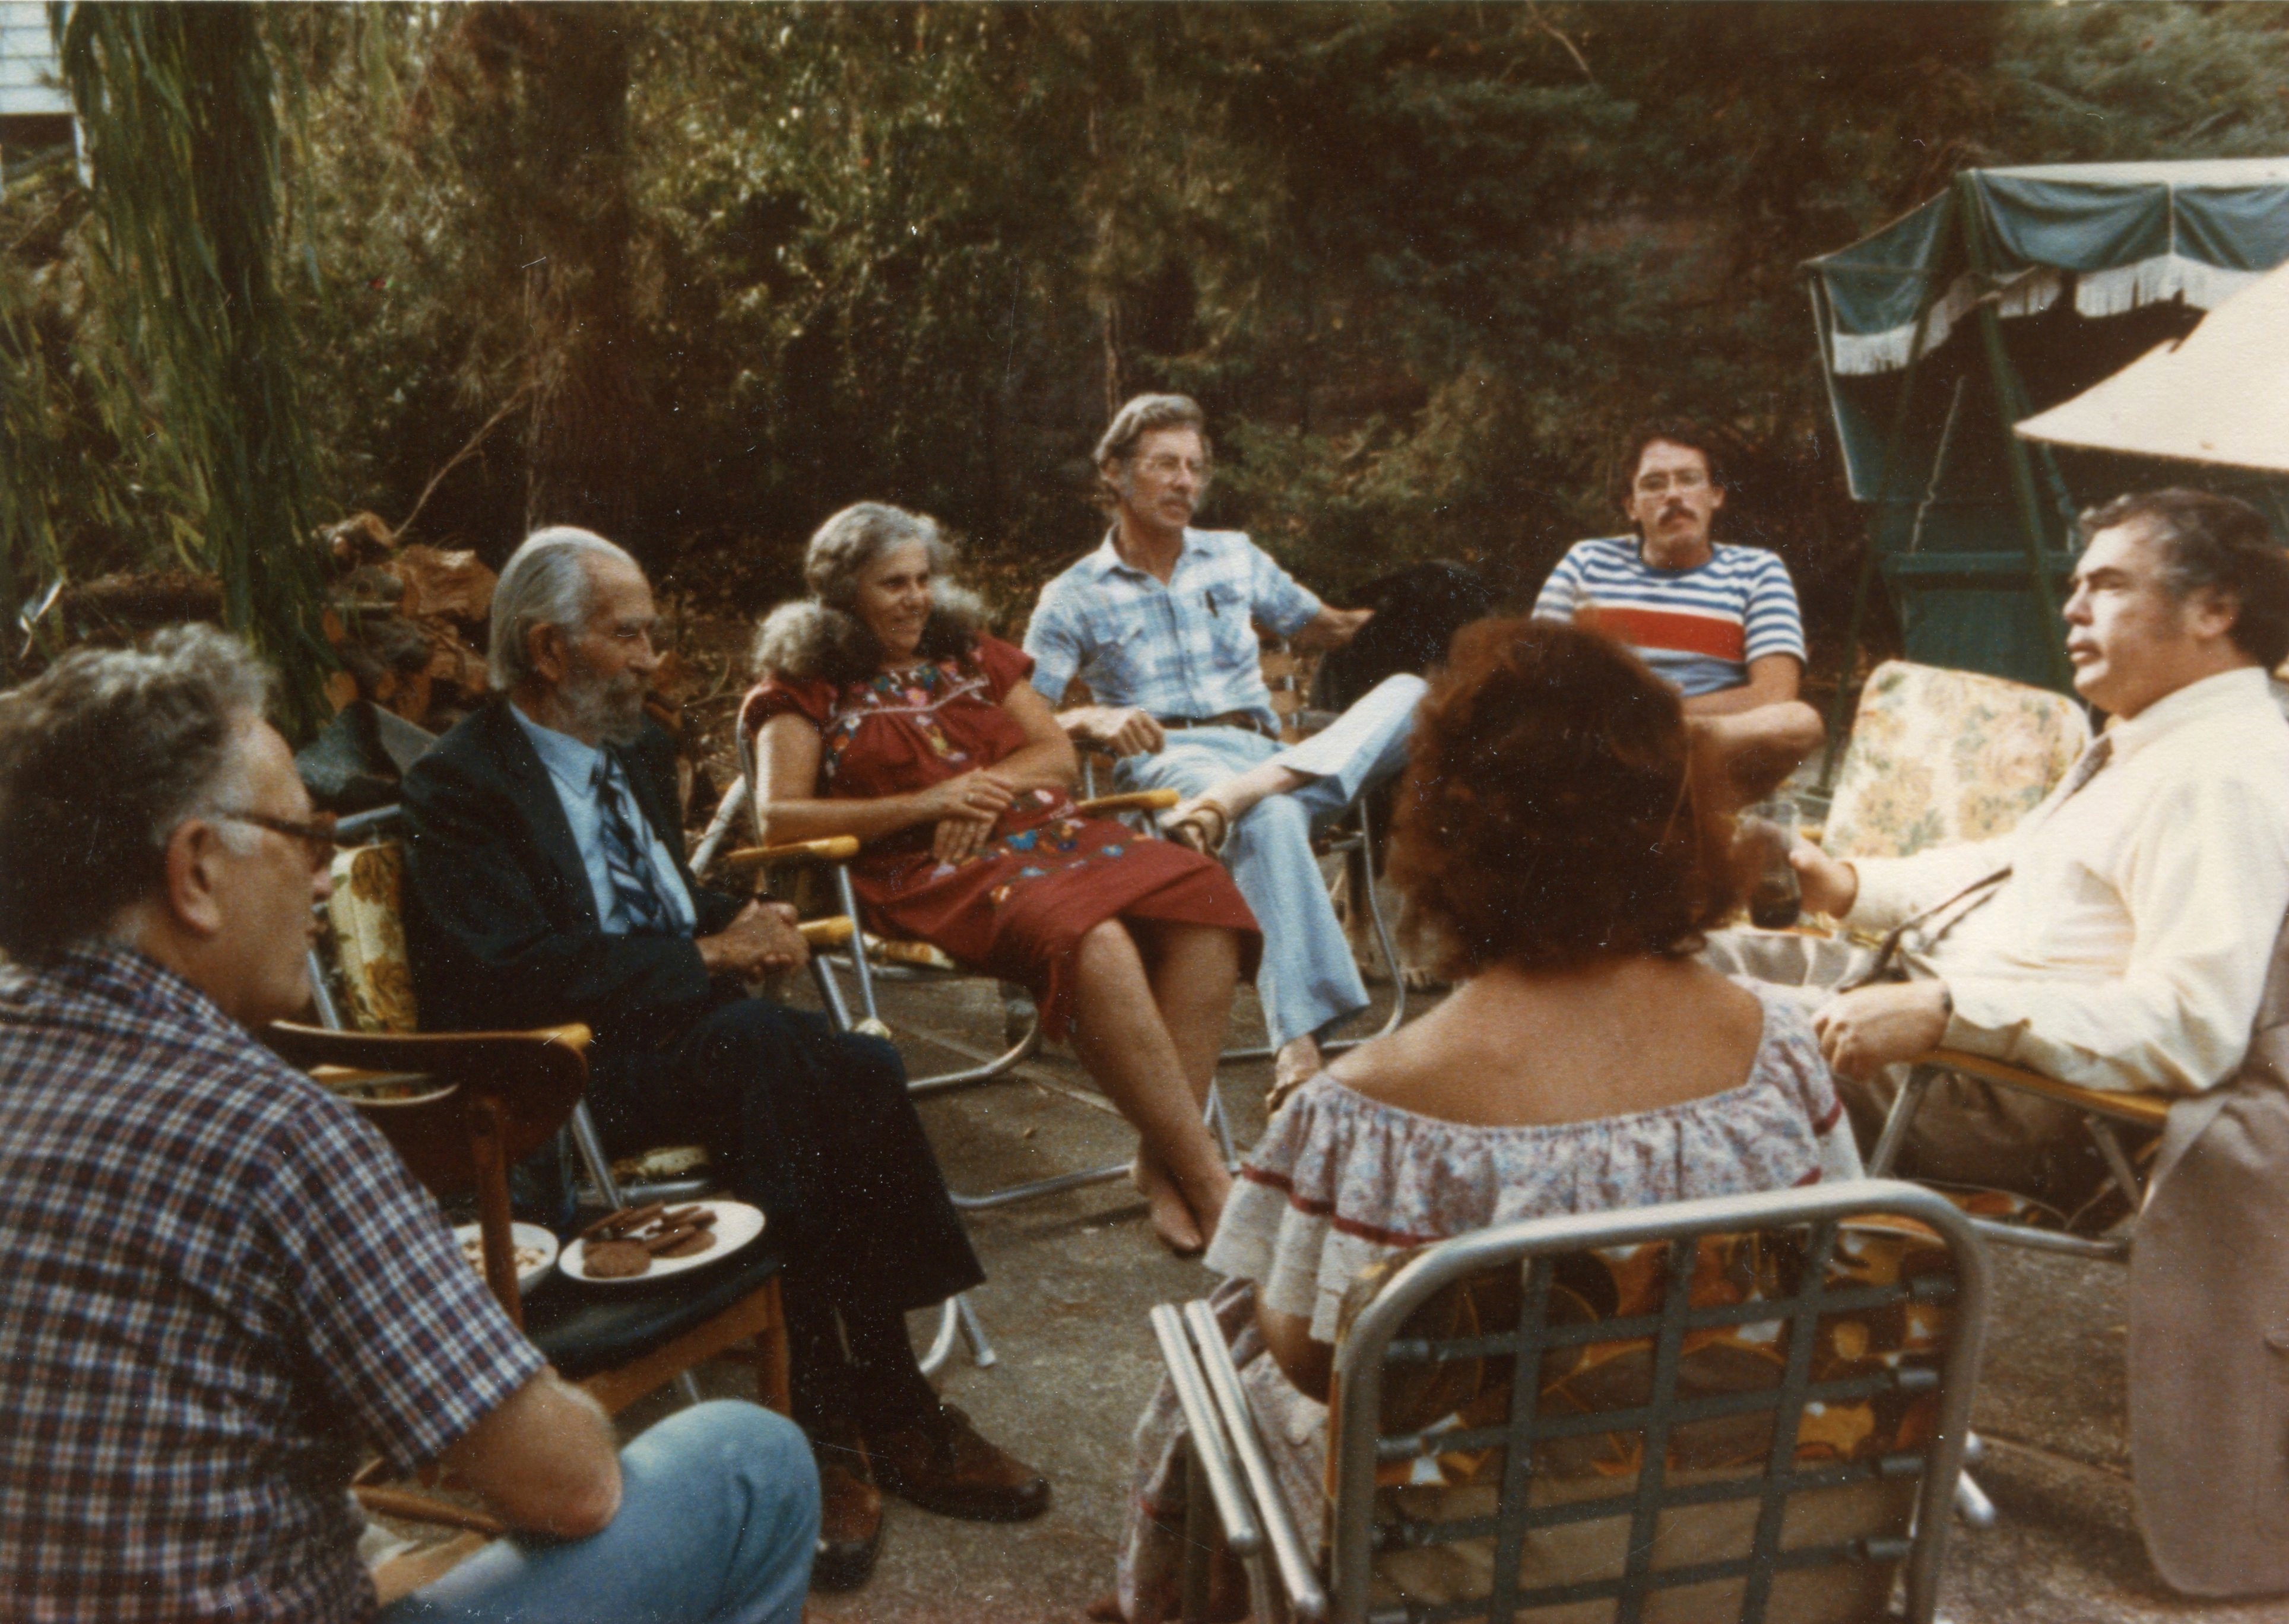 1984-Aug FW home, garden conversaton